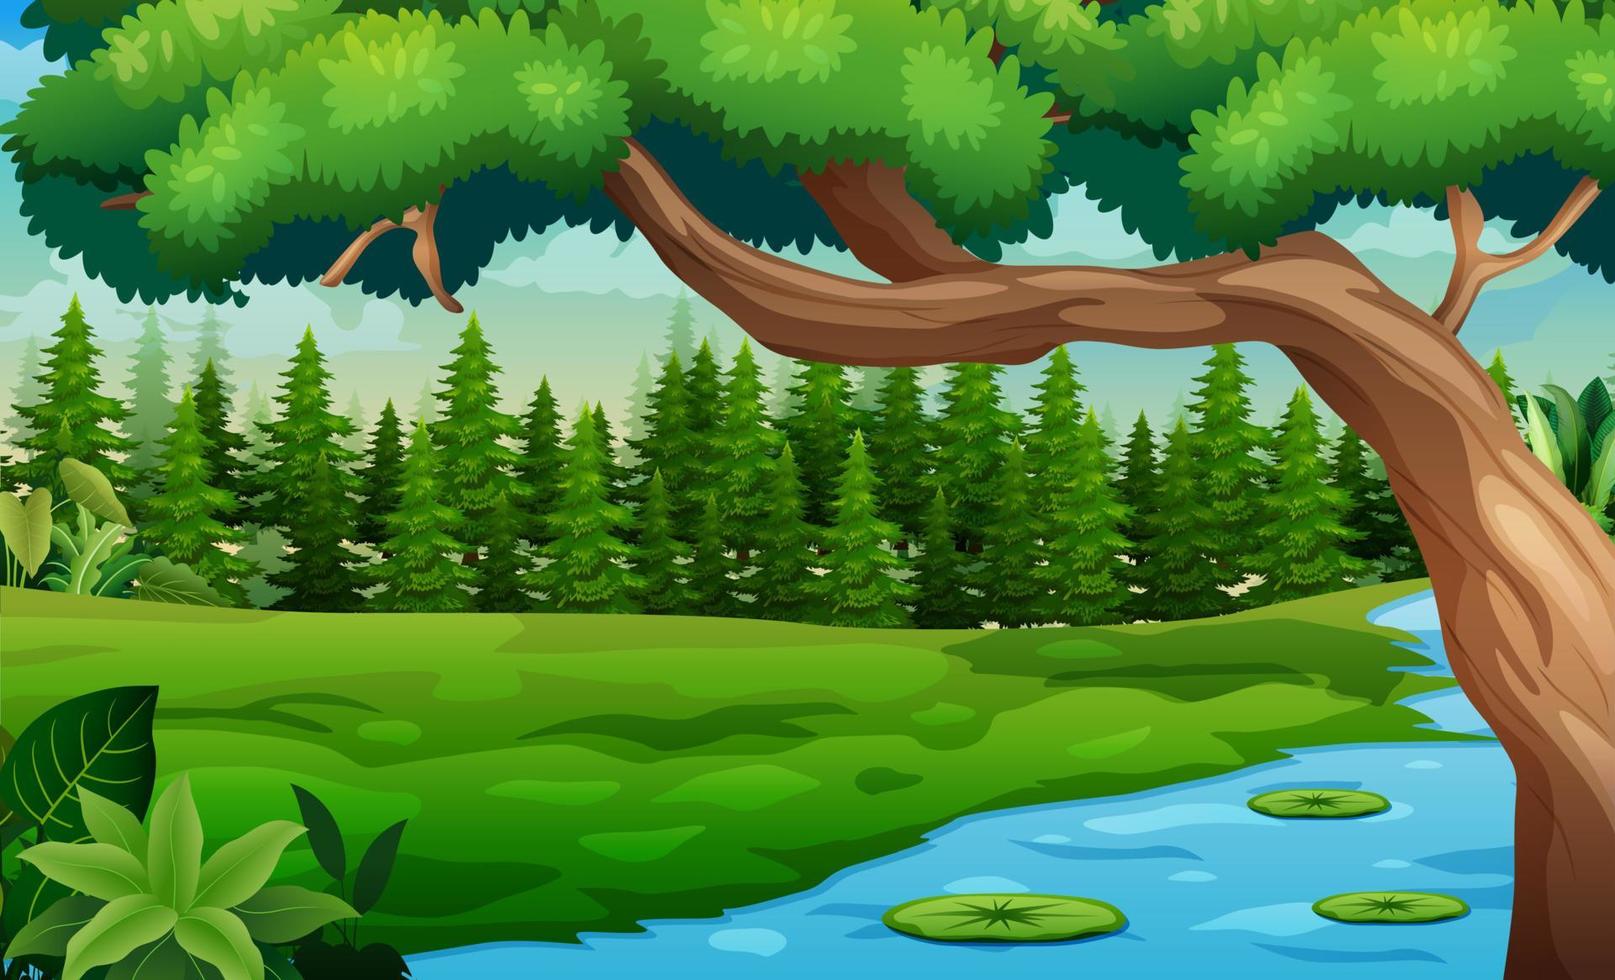 natuur boslandschap met rivier die door de weide stroomt illustratie vector